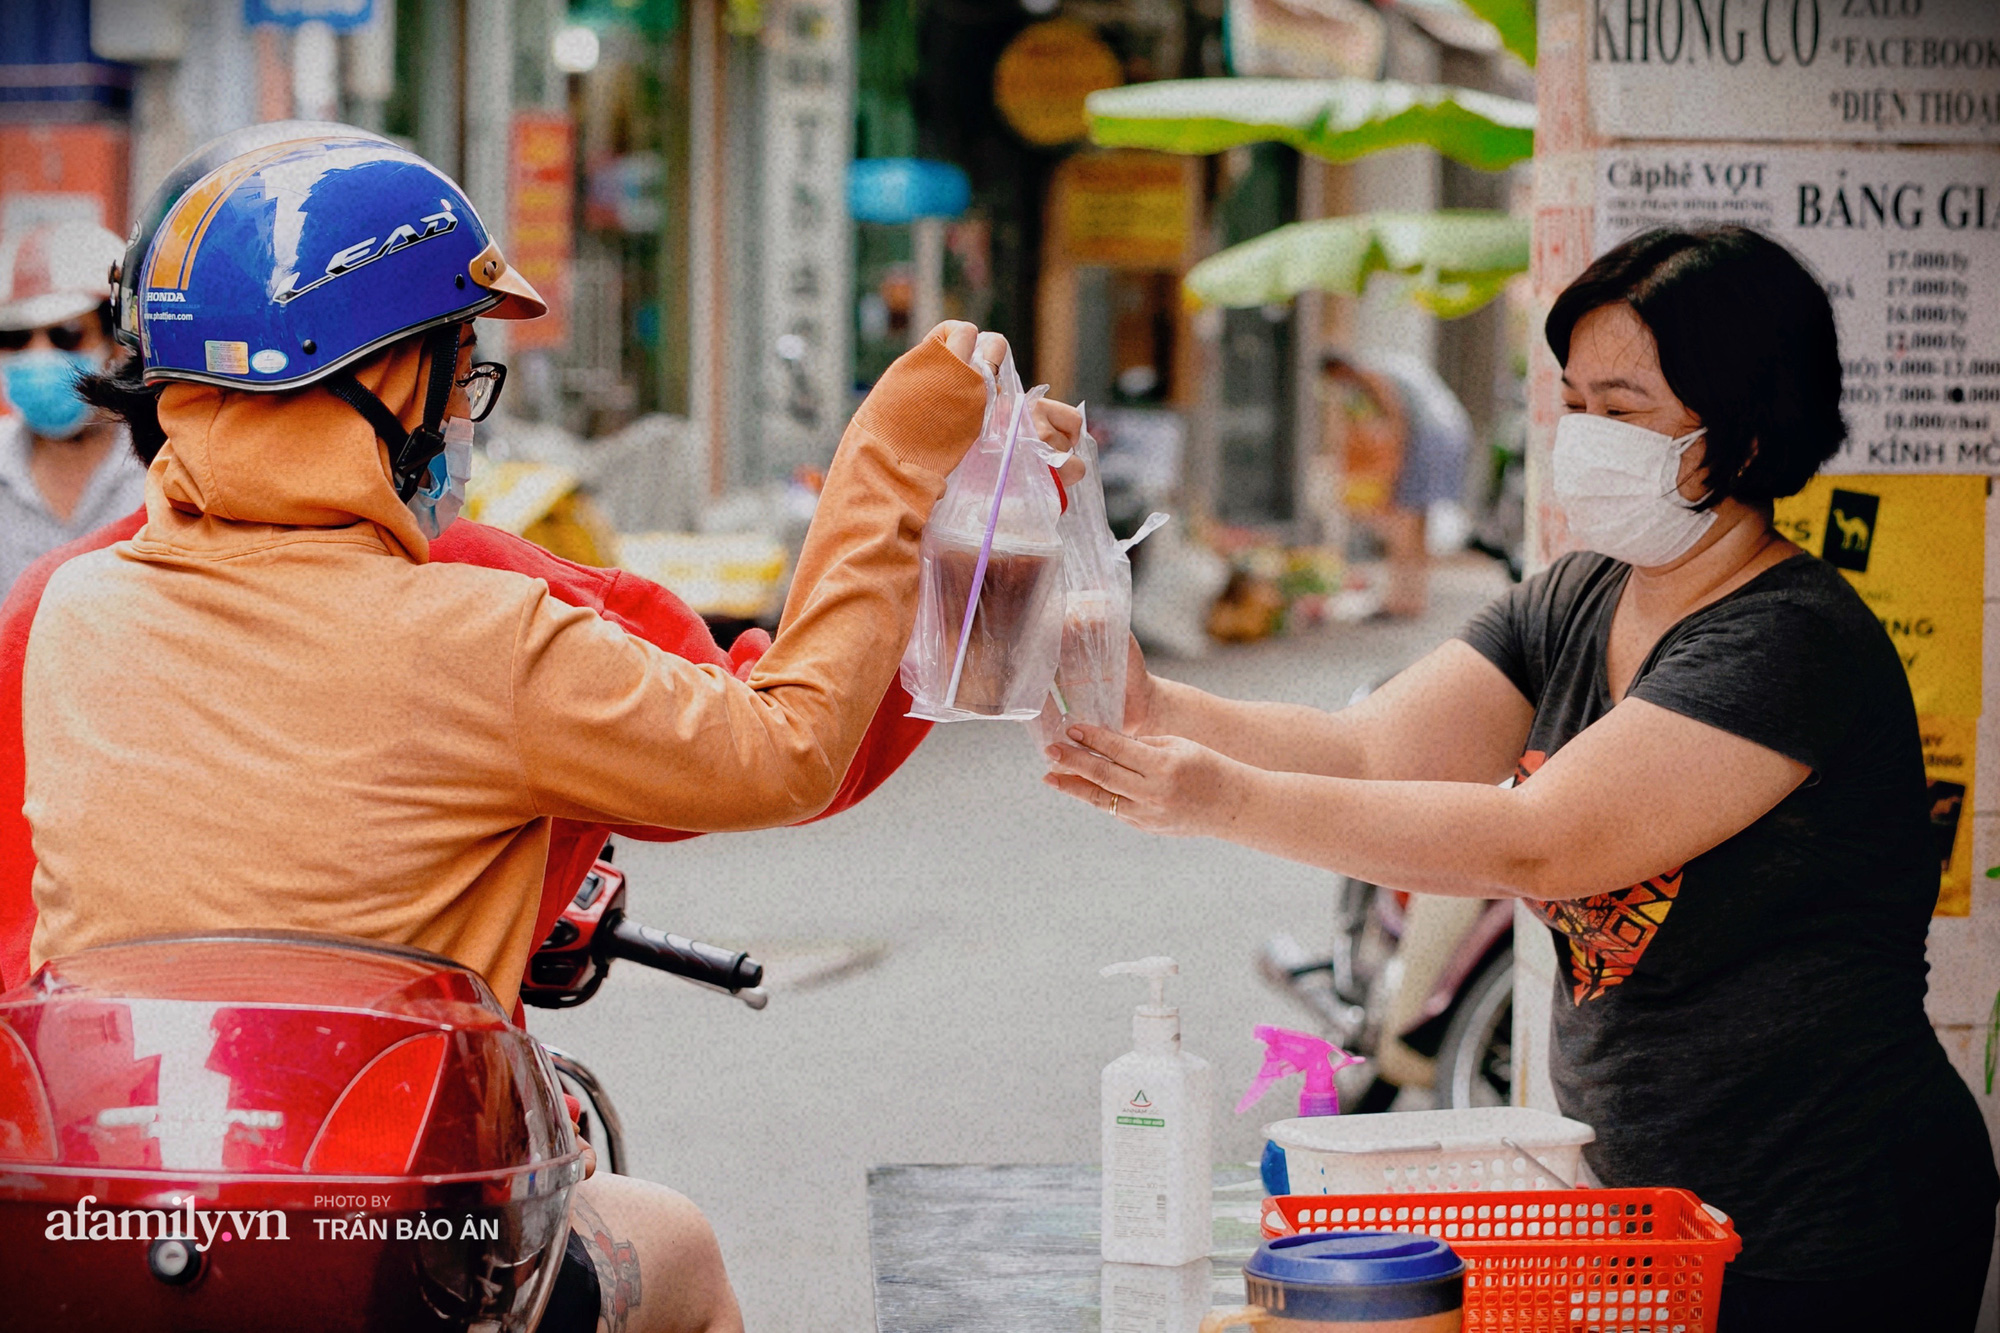 Cà phê Vợt - điểm hẹn mỗi đêm của giới trẻ ở Sài Gòn, không chỉ bán cà phê mà còn cả những kỷ niệm  - Ảnh 6.